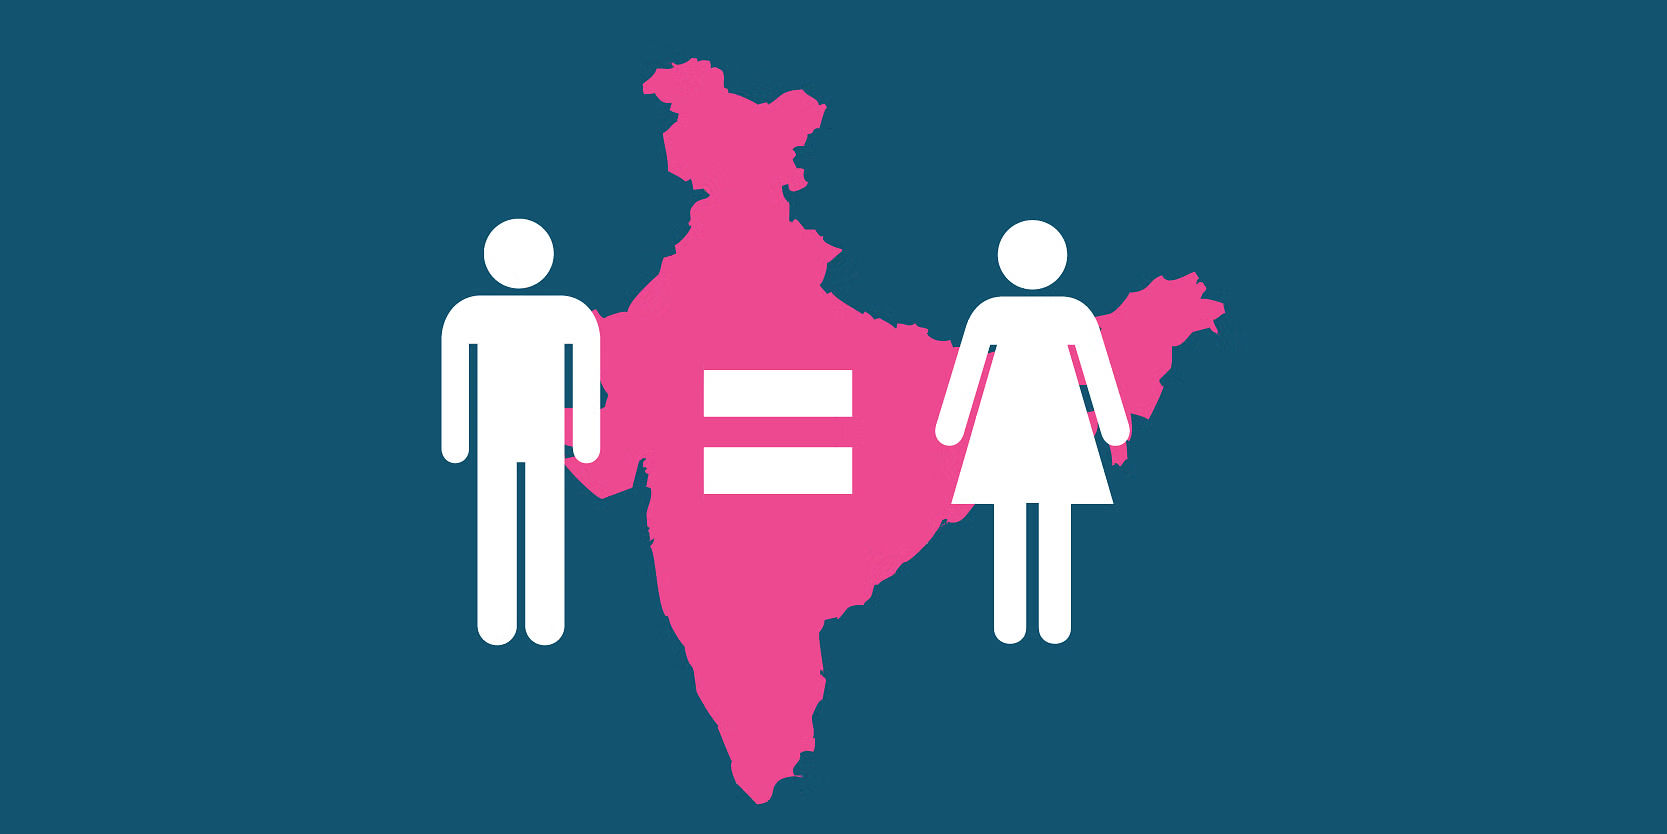 स्त्री-पुरूष असमानता सूचकांक 2022 में भारत ने 14 पायदान की छलांग लगाई